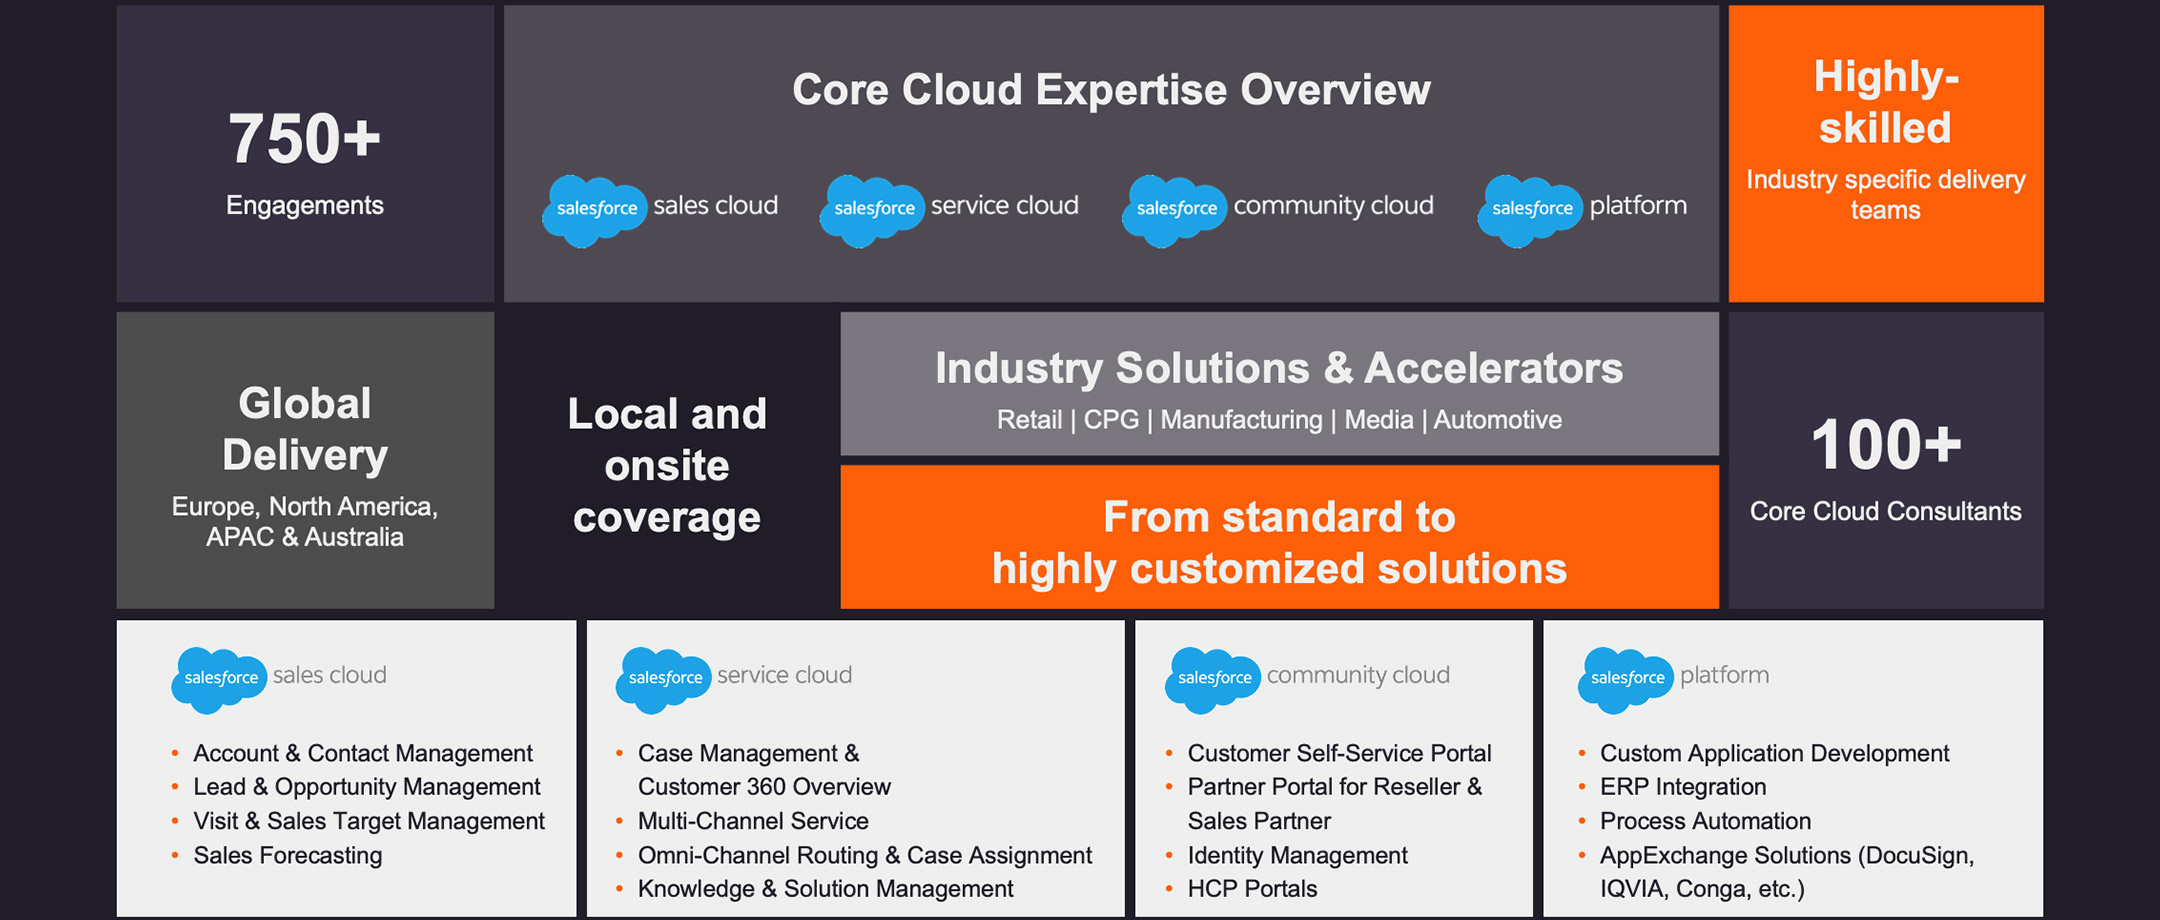 en our core cloud expertise differentiators